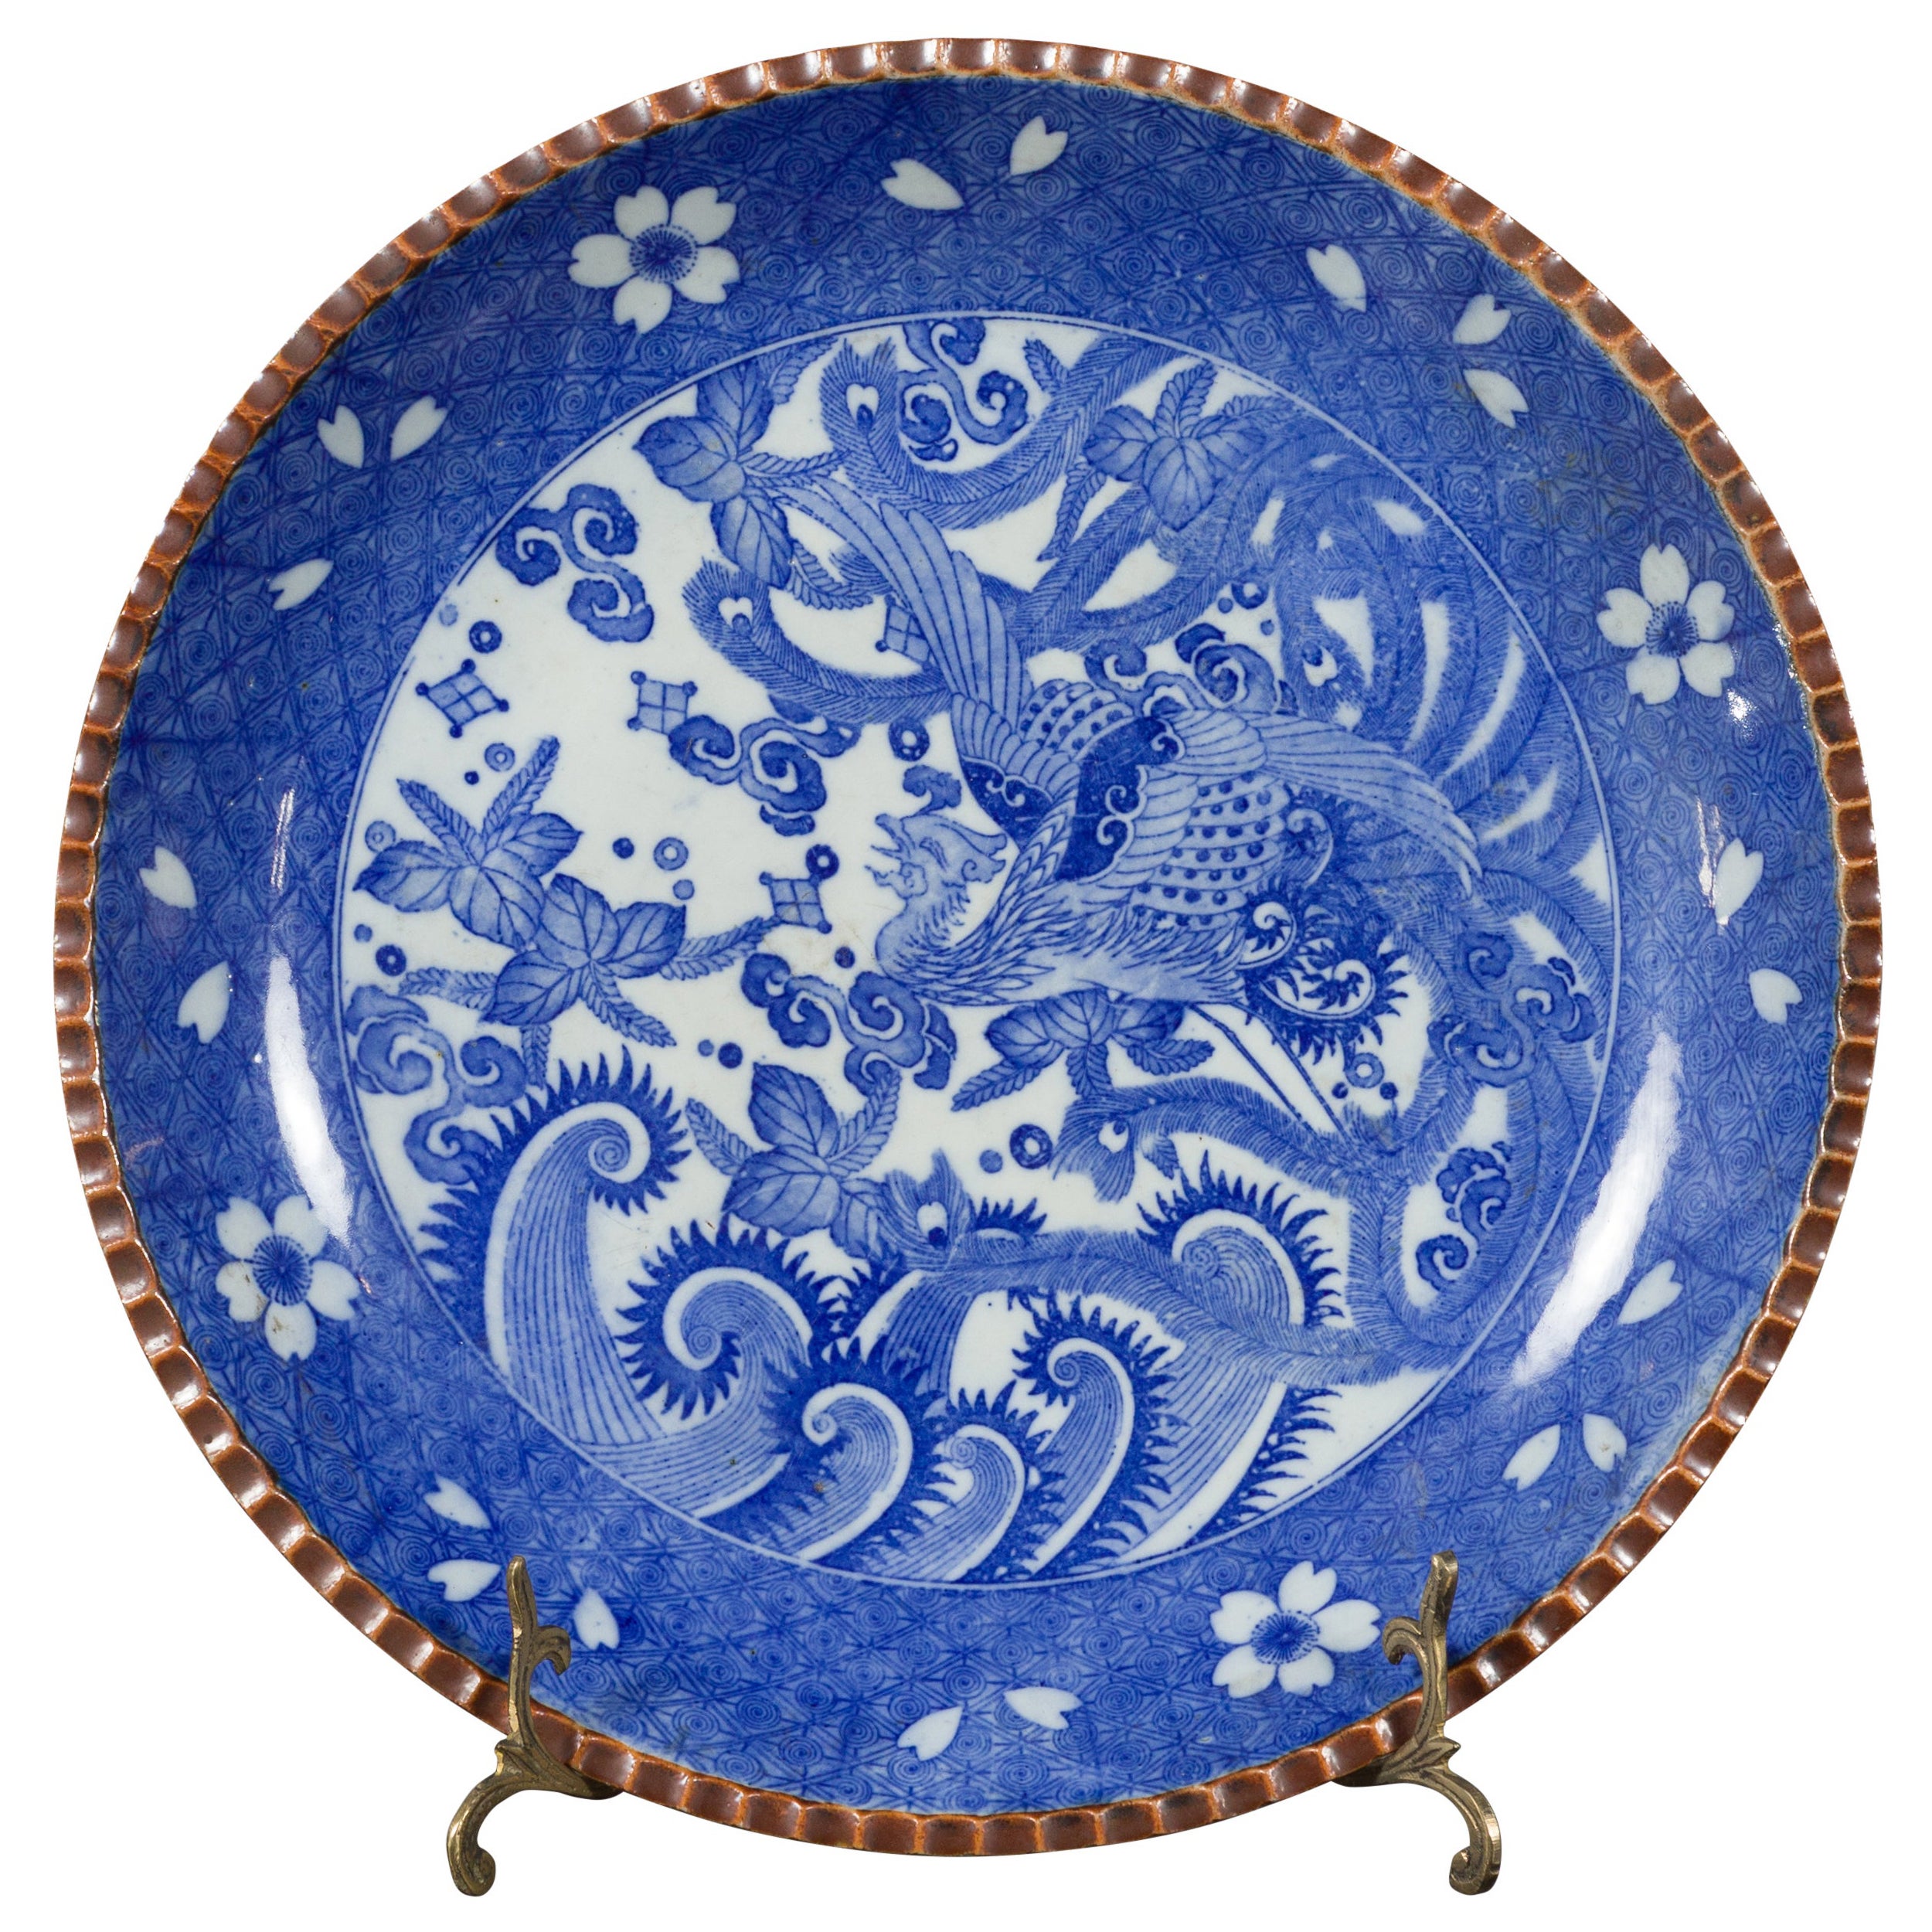 Assiette de service en porcelaine japonaise Igezara de la période Meiji avec motifs de phénix et de feuillage